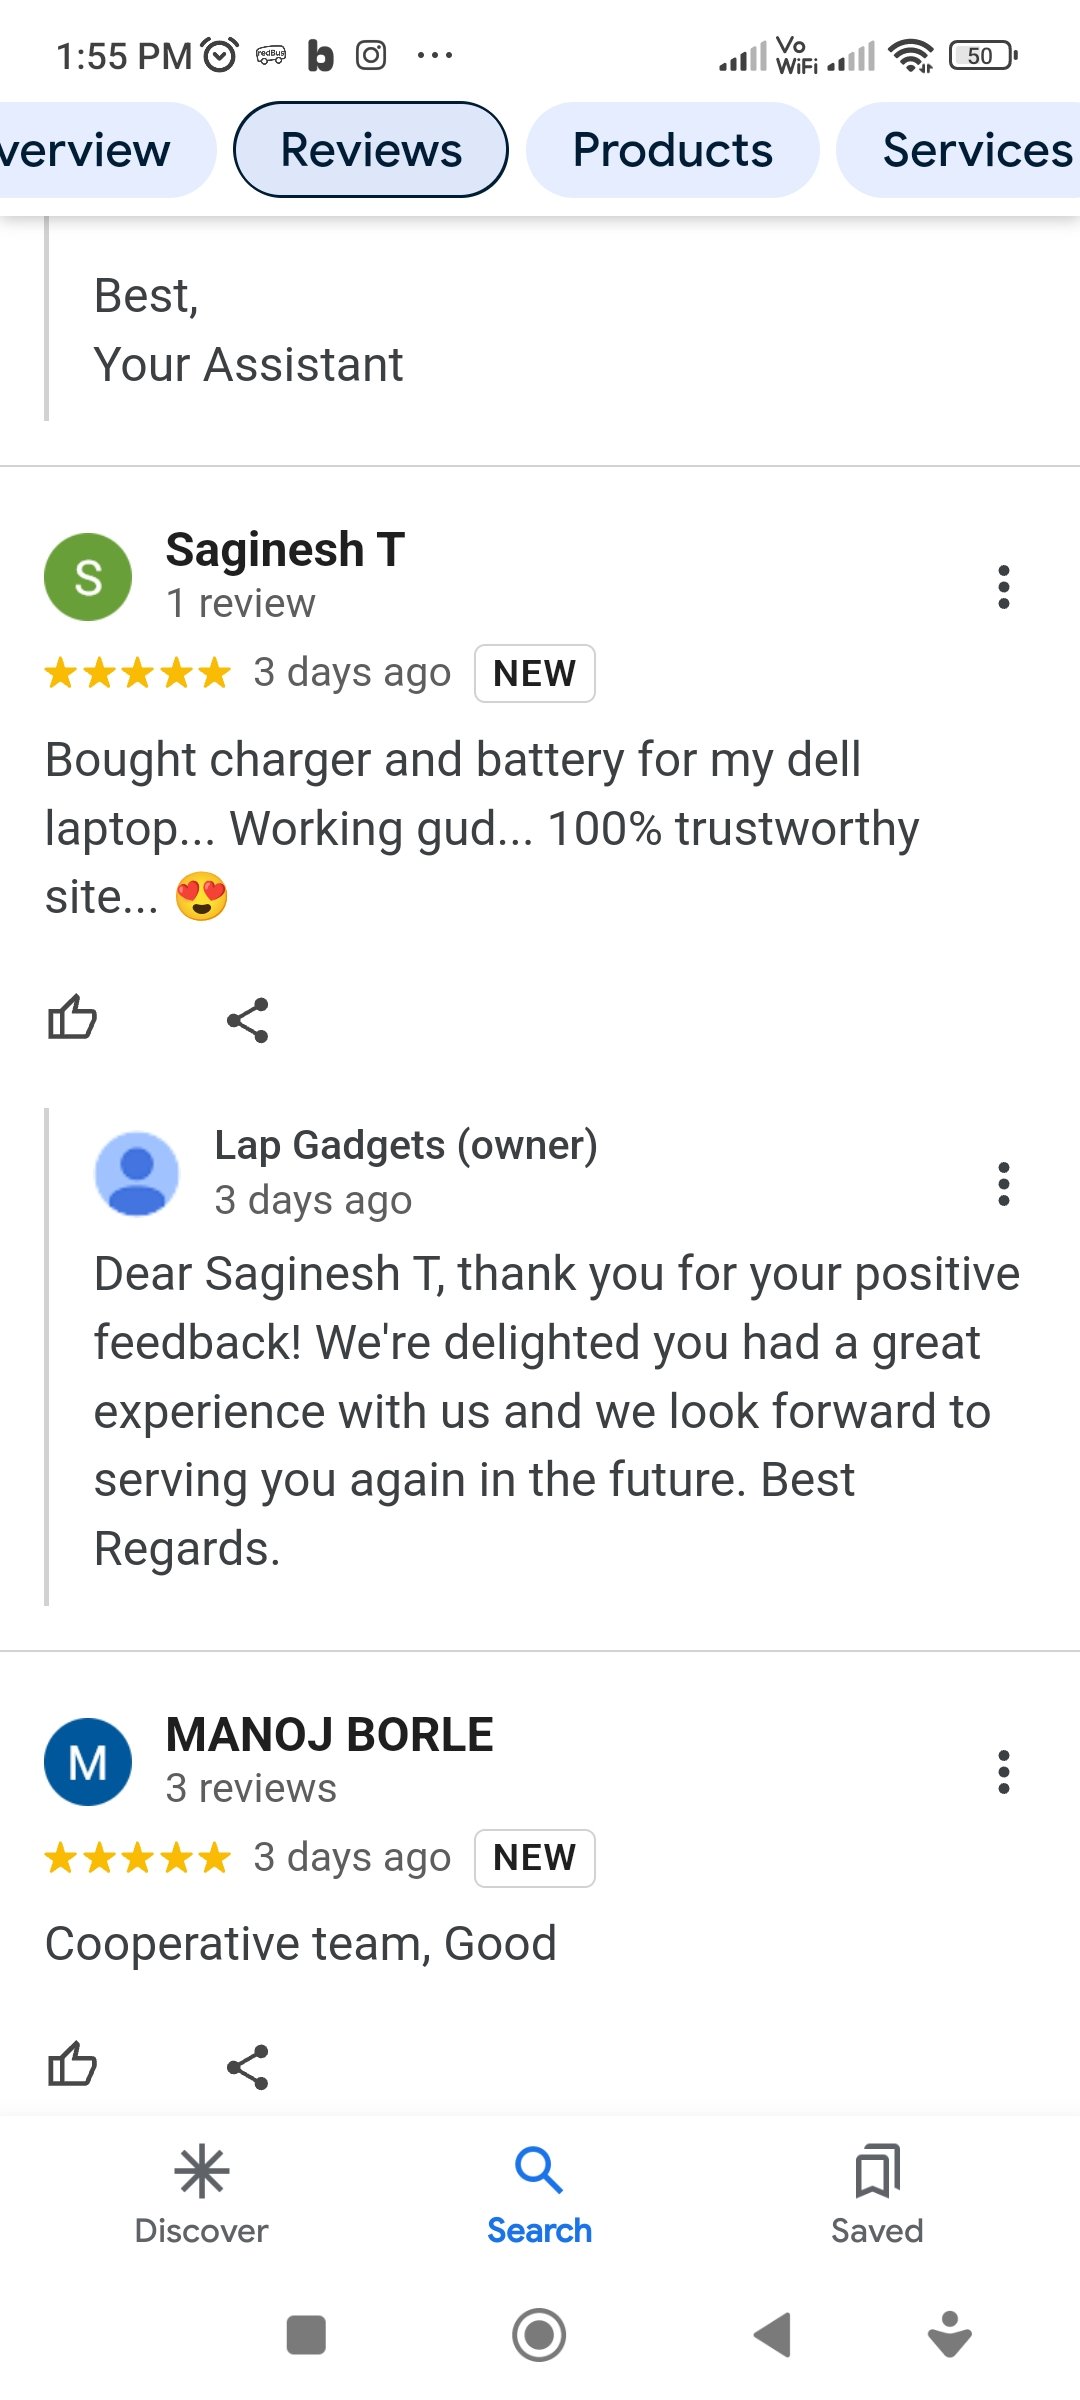 Lap Gadgets reviews